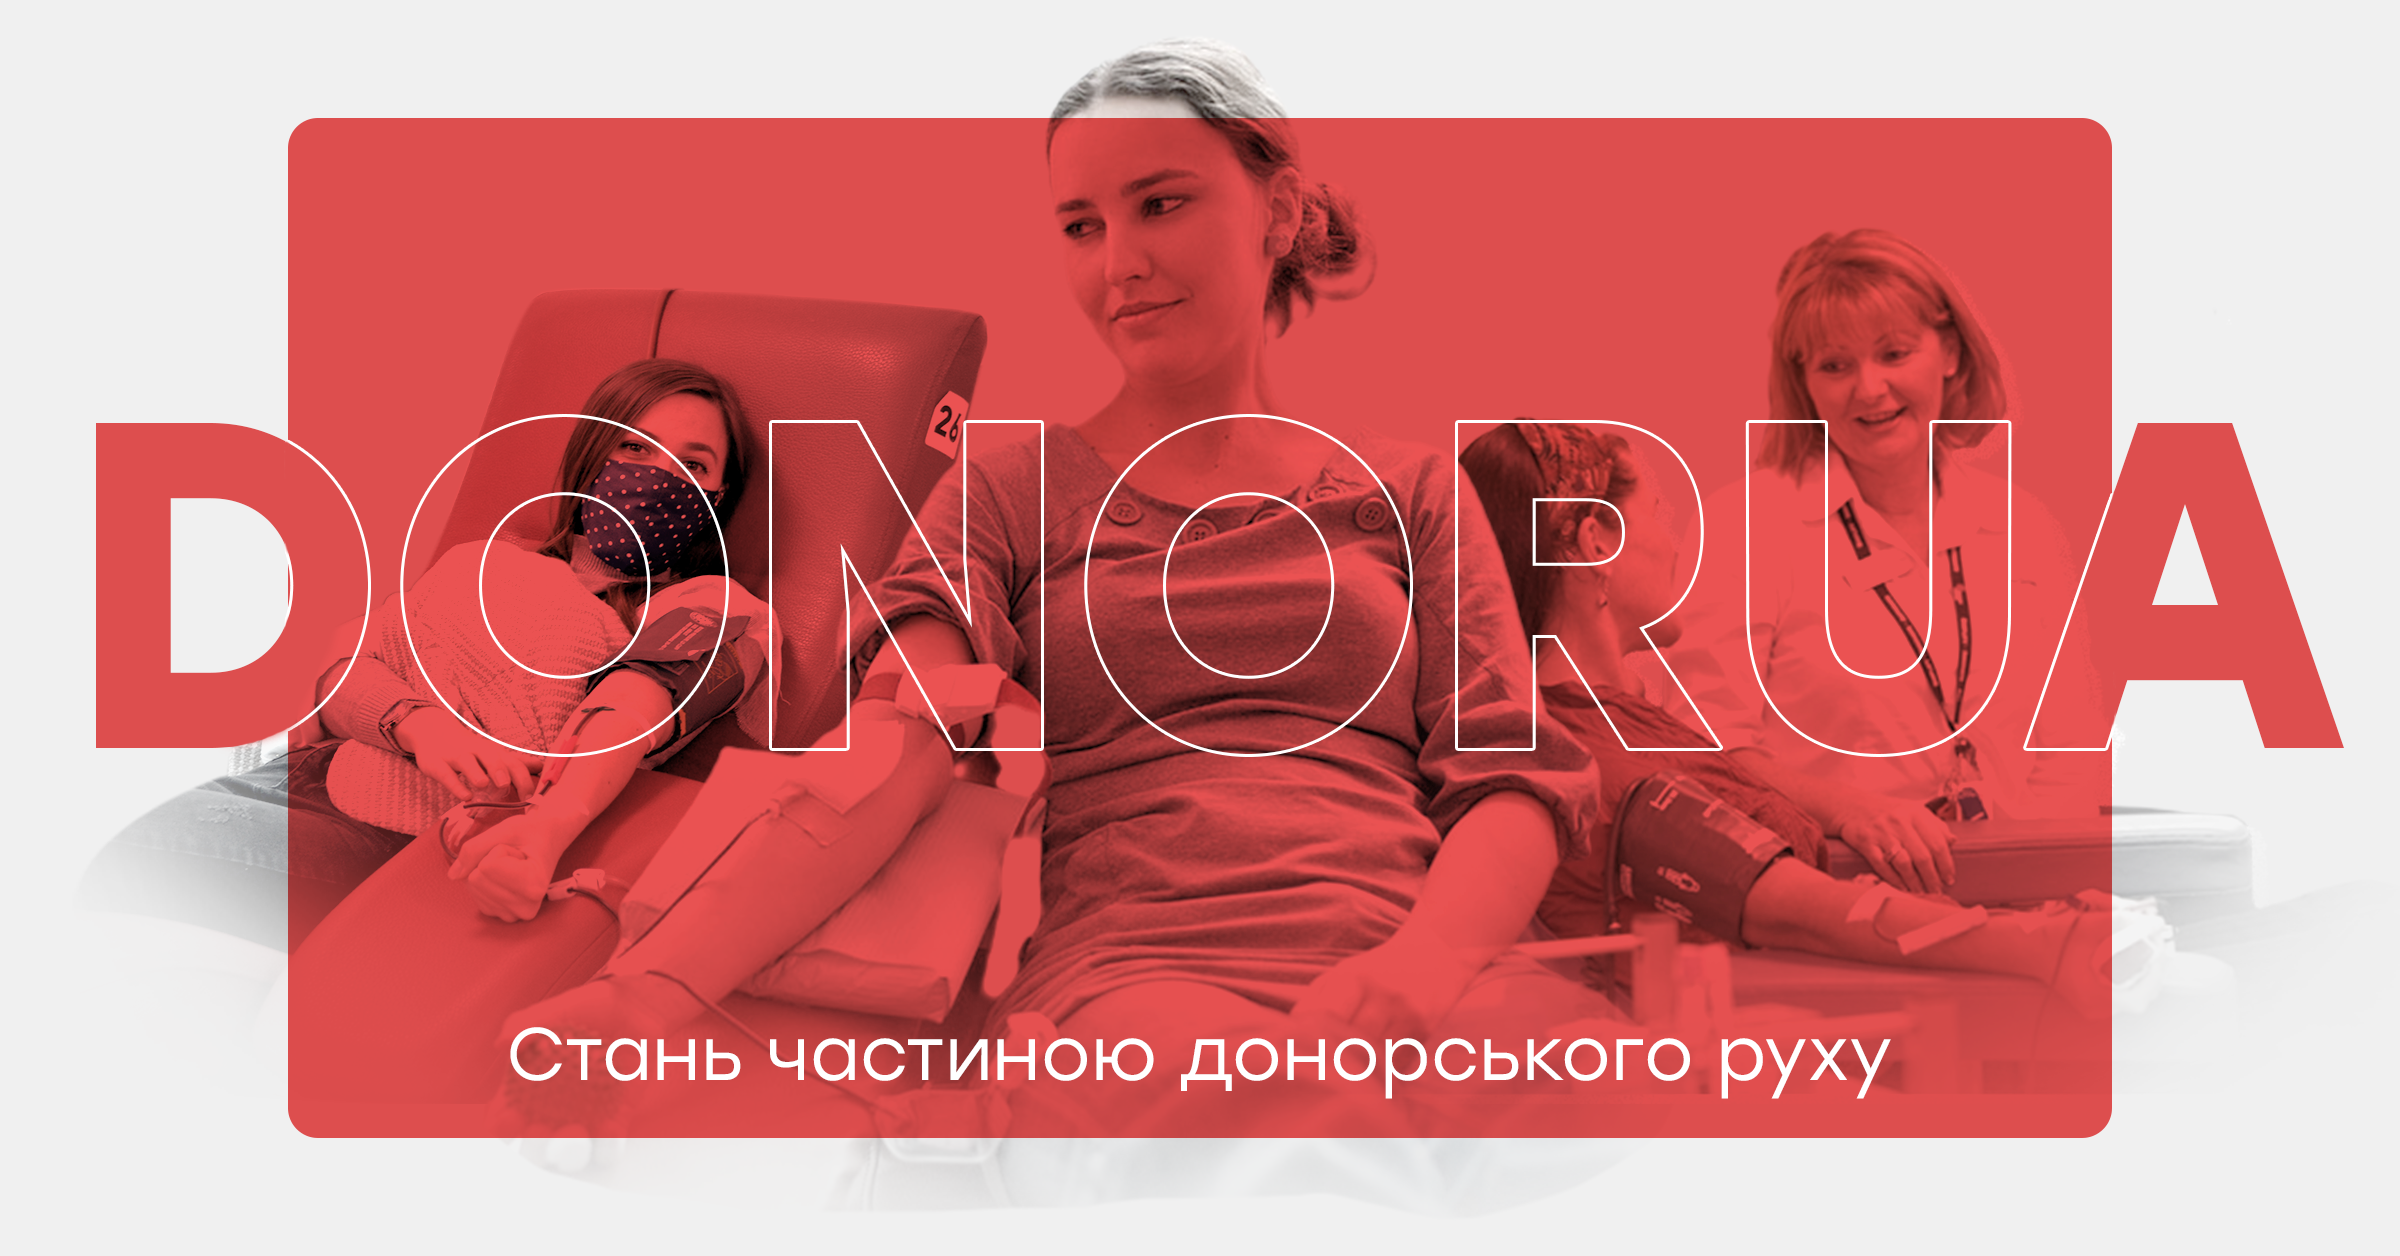 Лікарня Мечникова знову запрошує донорів здати кров для поранених і цивільних пацієнтів!